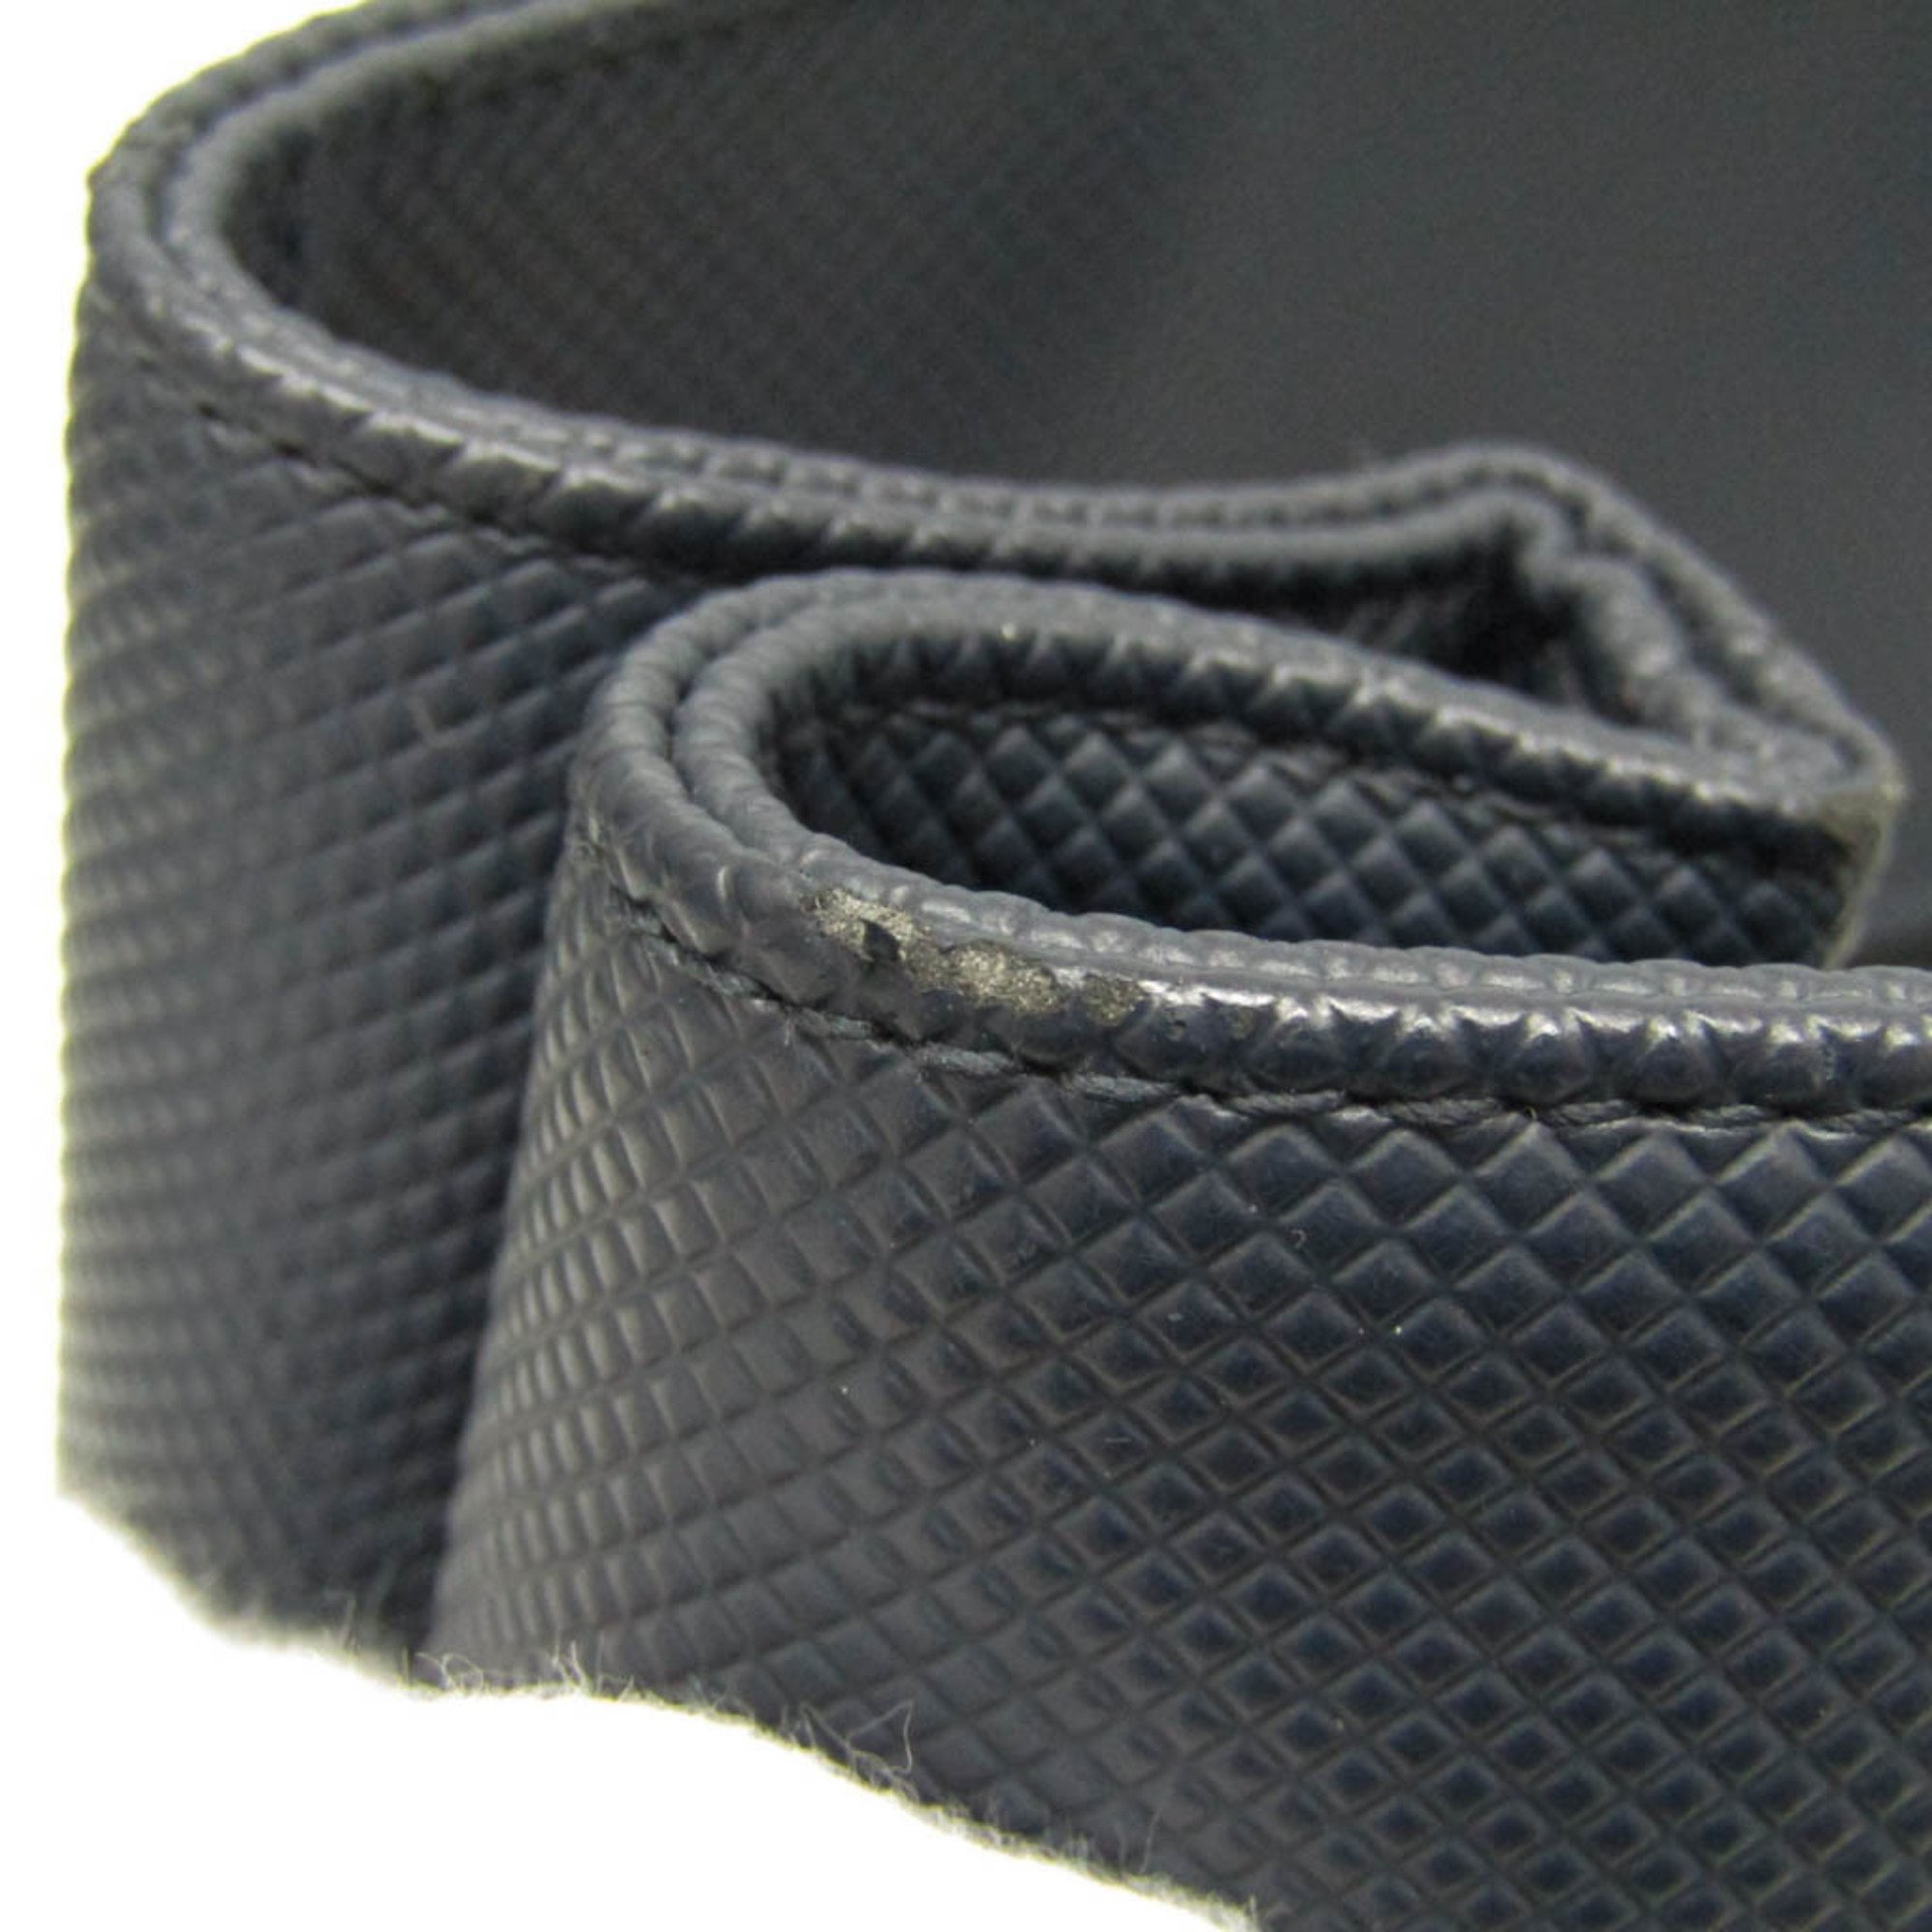 Bottega Veneta Intrecciato Marco Polo Men's PVC,Leather Tote Bag Black,Navy